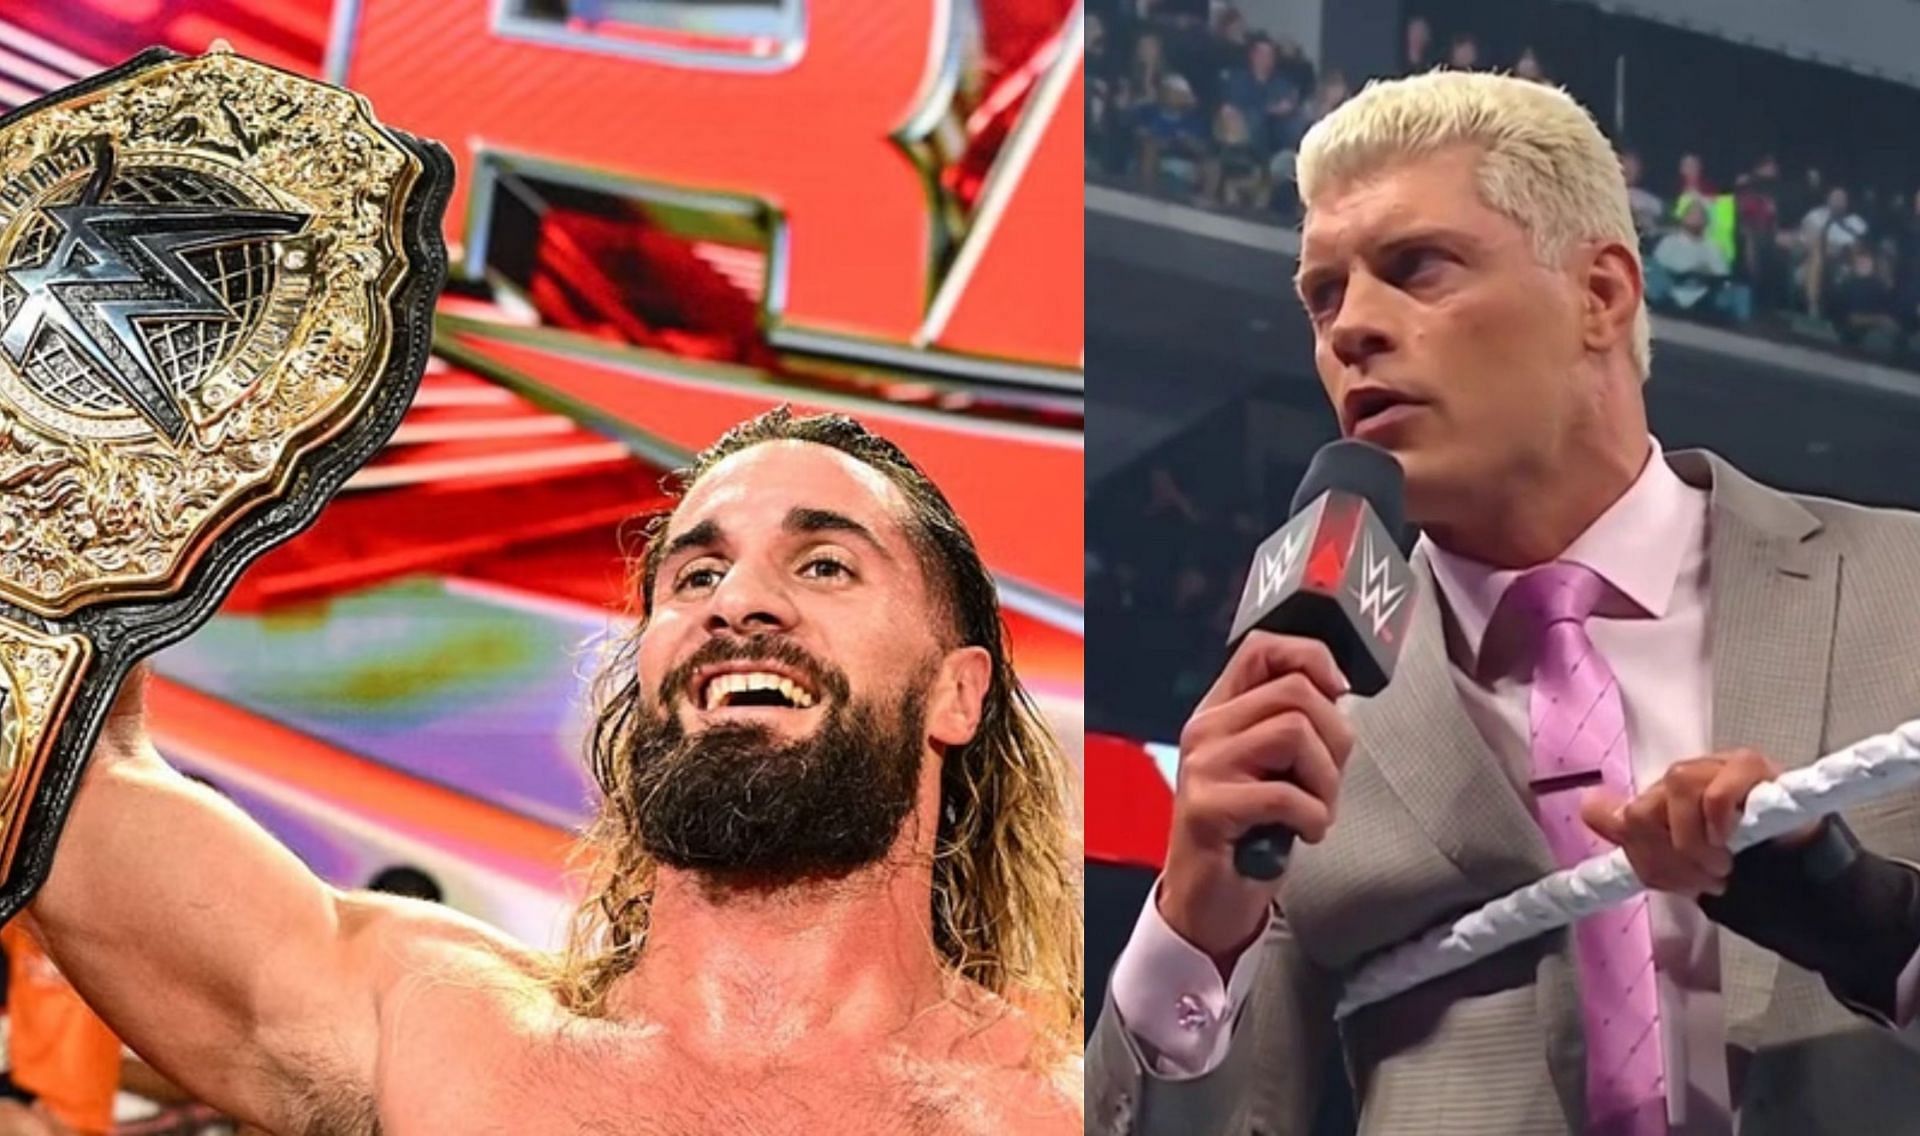 WWE Raw में कई रोचक चीज़ें देखने को मिली 